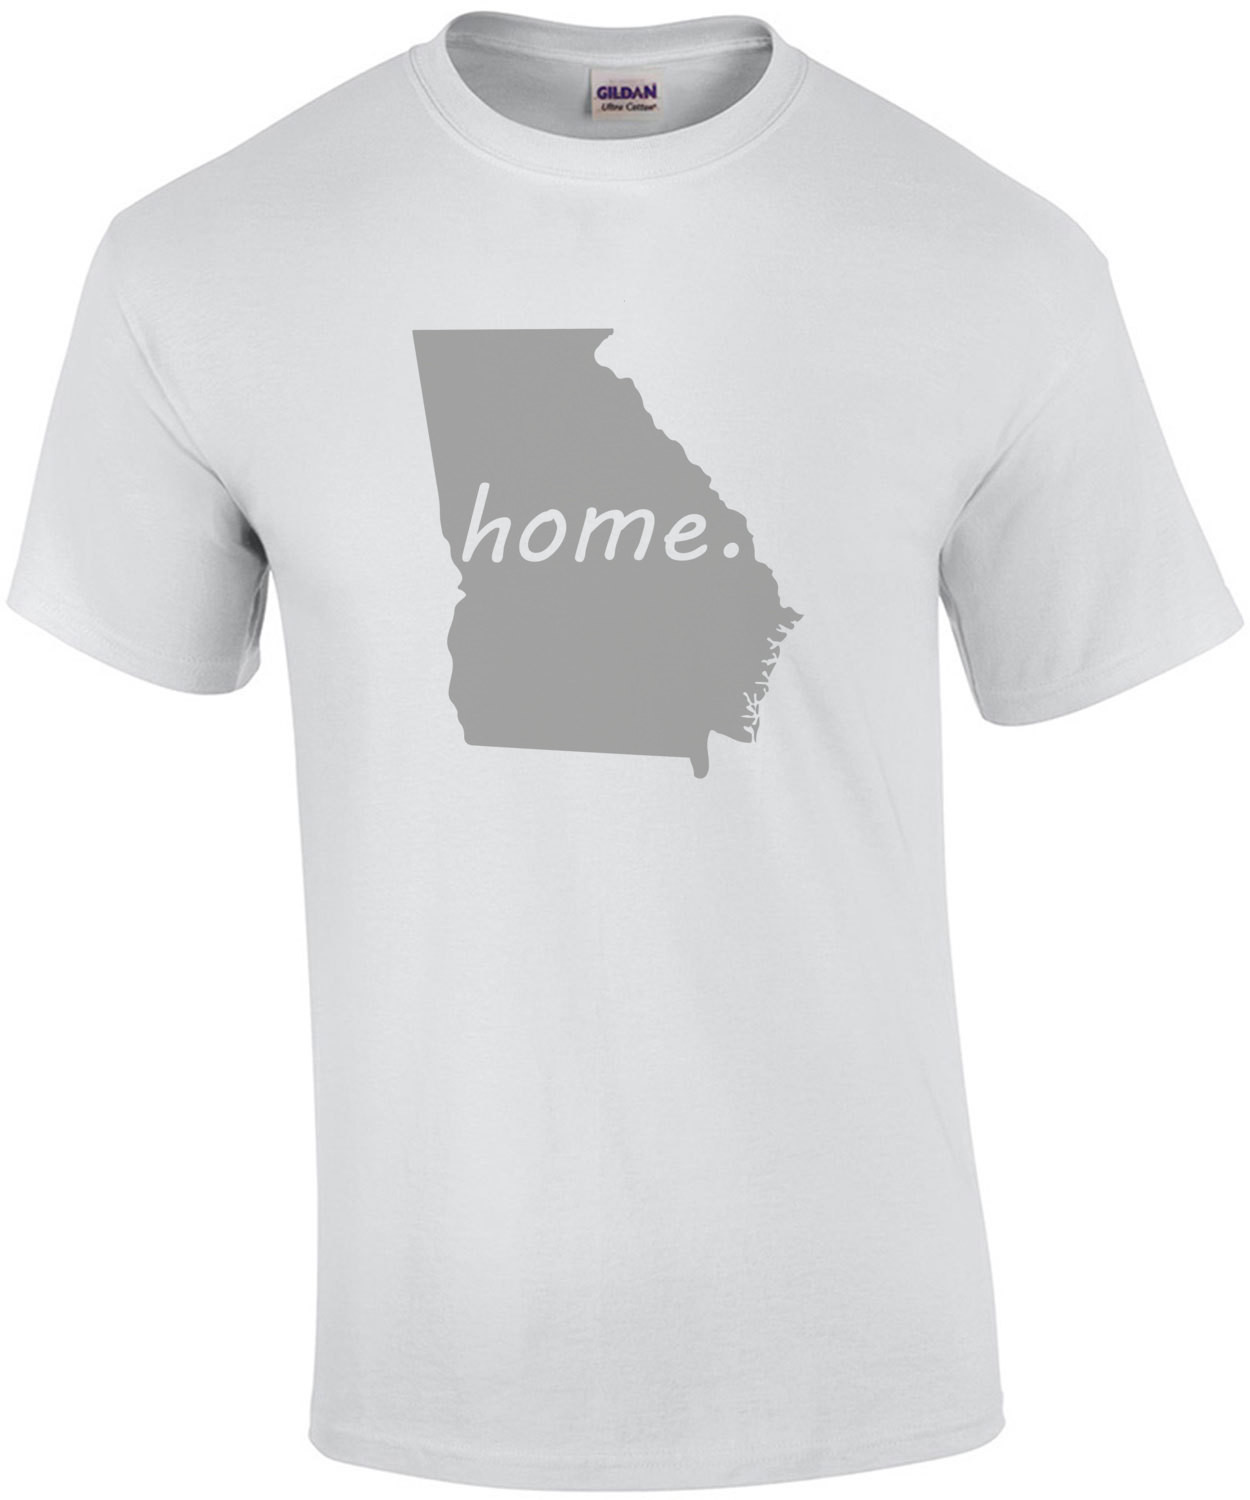 Georgia Home - Georgia T-Shirt